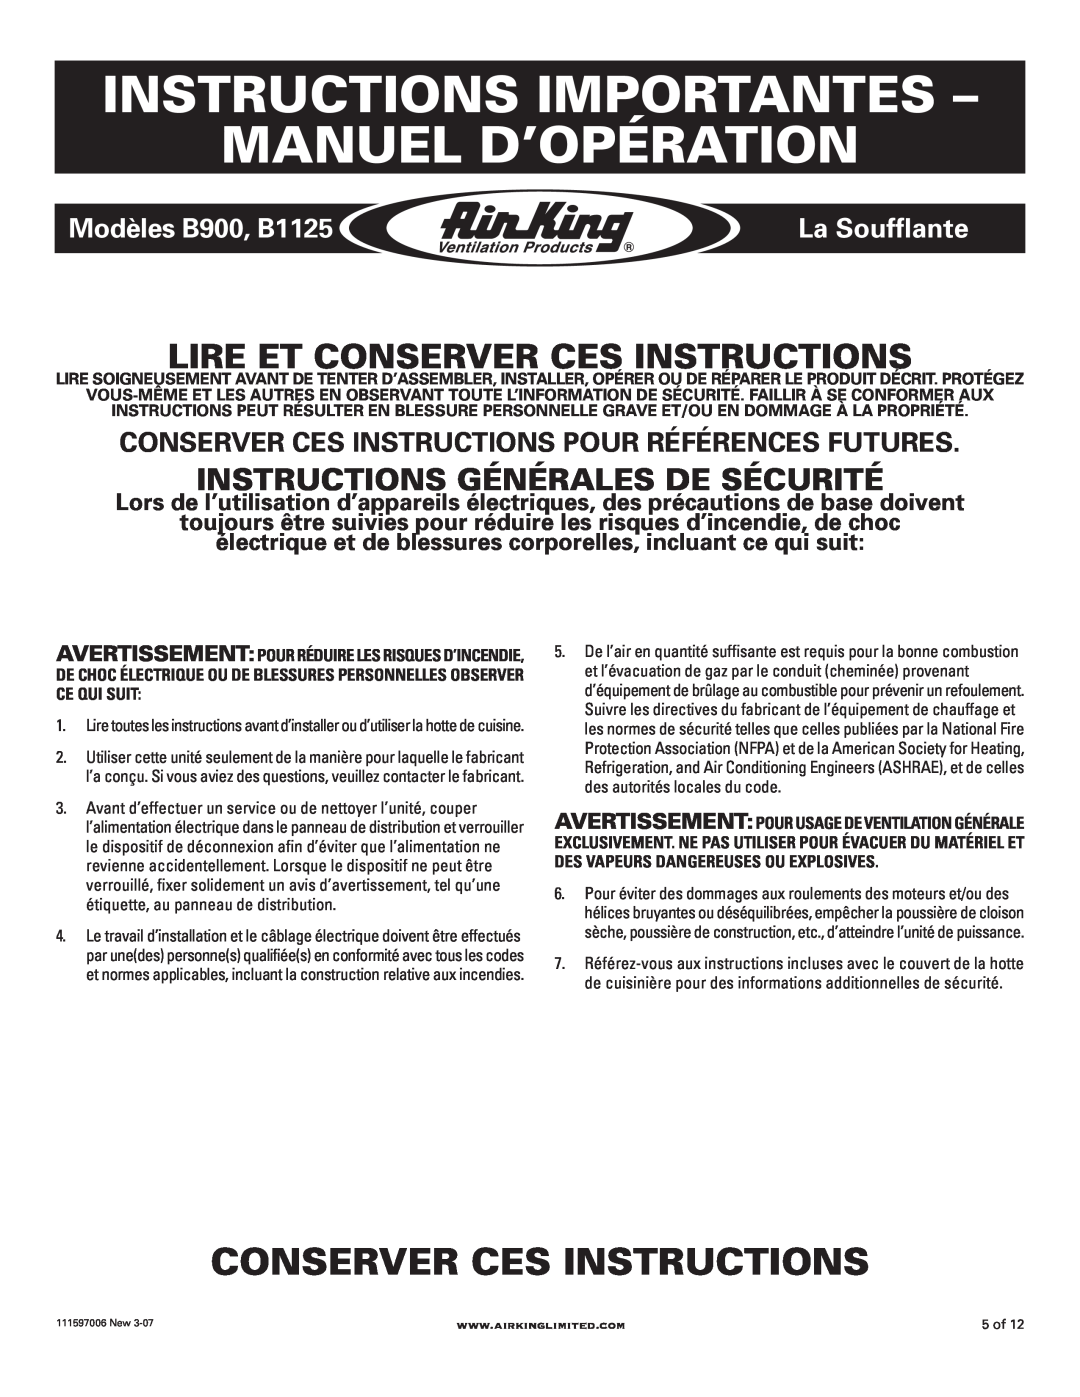 Air King Instructions Importantes - Manuel D’Opération, Conserver Ces Instructions, Modèles B900, B1125, La Soufflante 